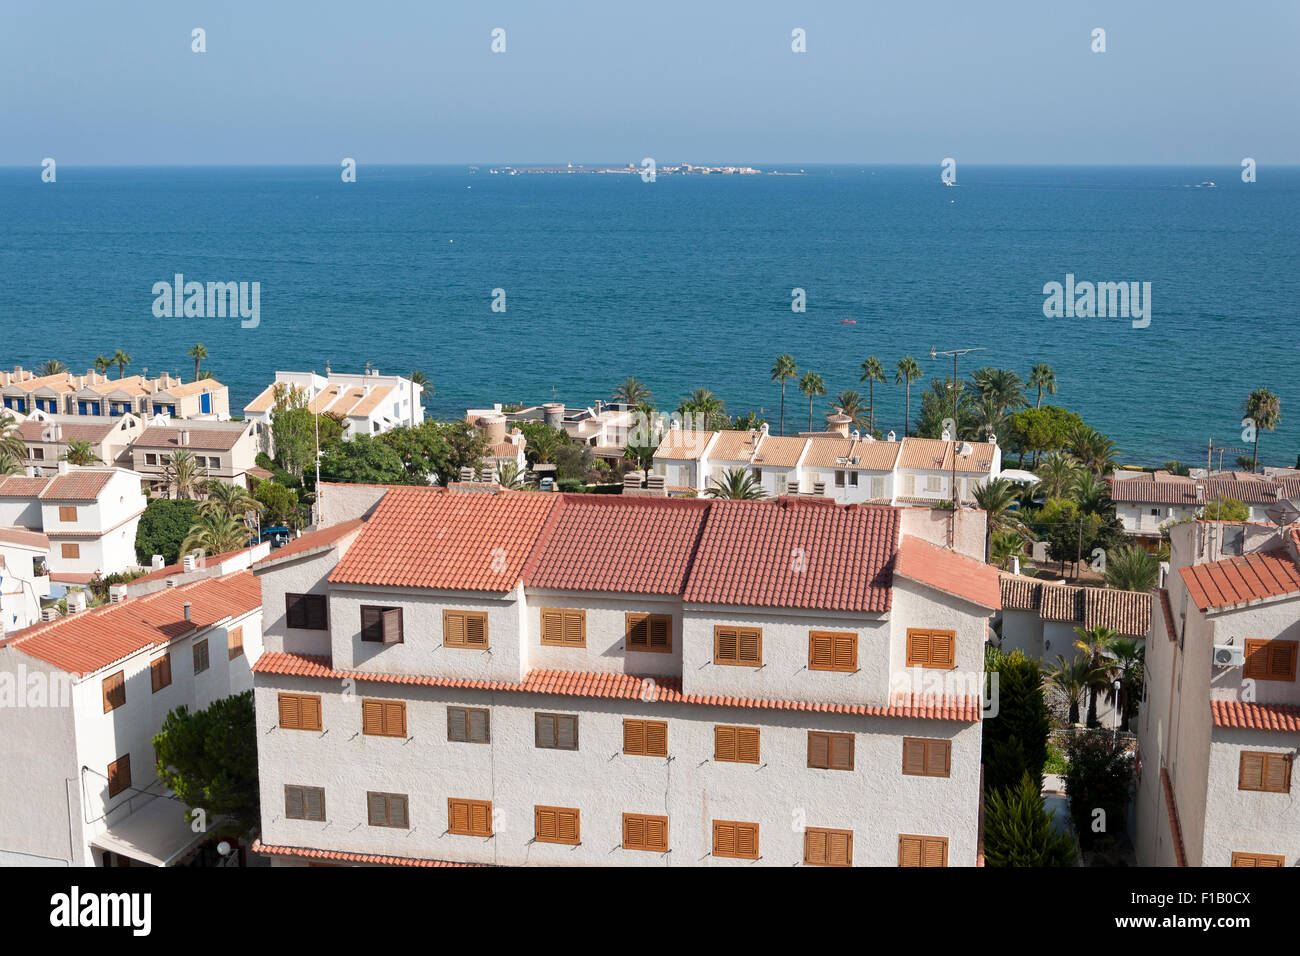 Vedute di Santa Pola la città con l isolotto di Tabarca in background. È una città costiera situata nella comarca del Baix Vinalopo, in Foto Stock